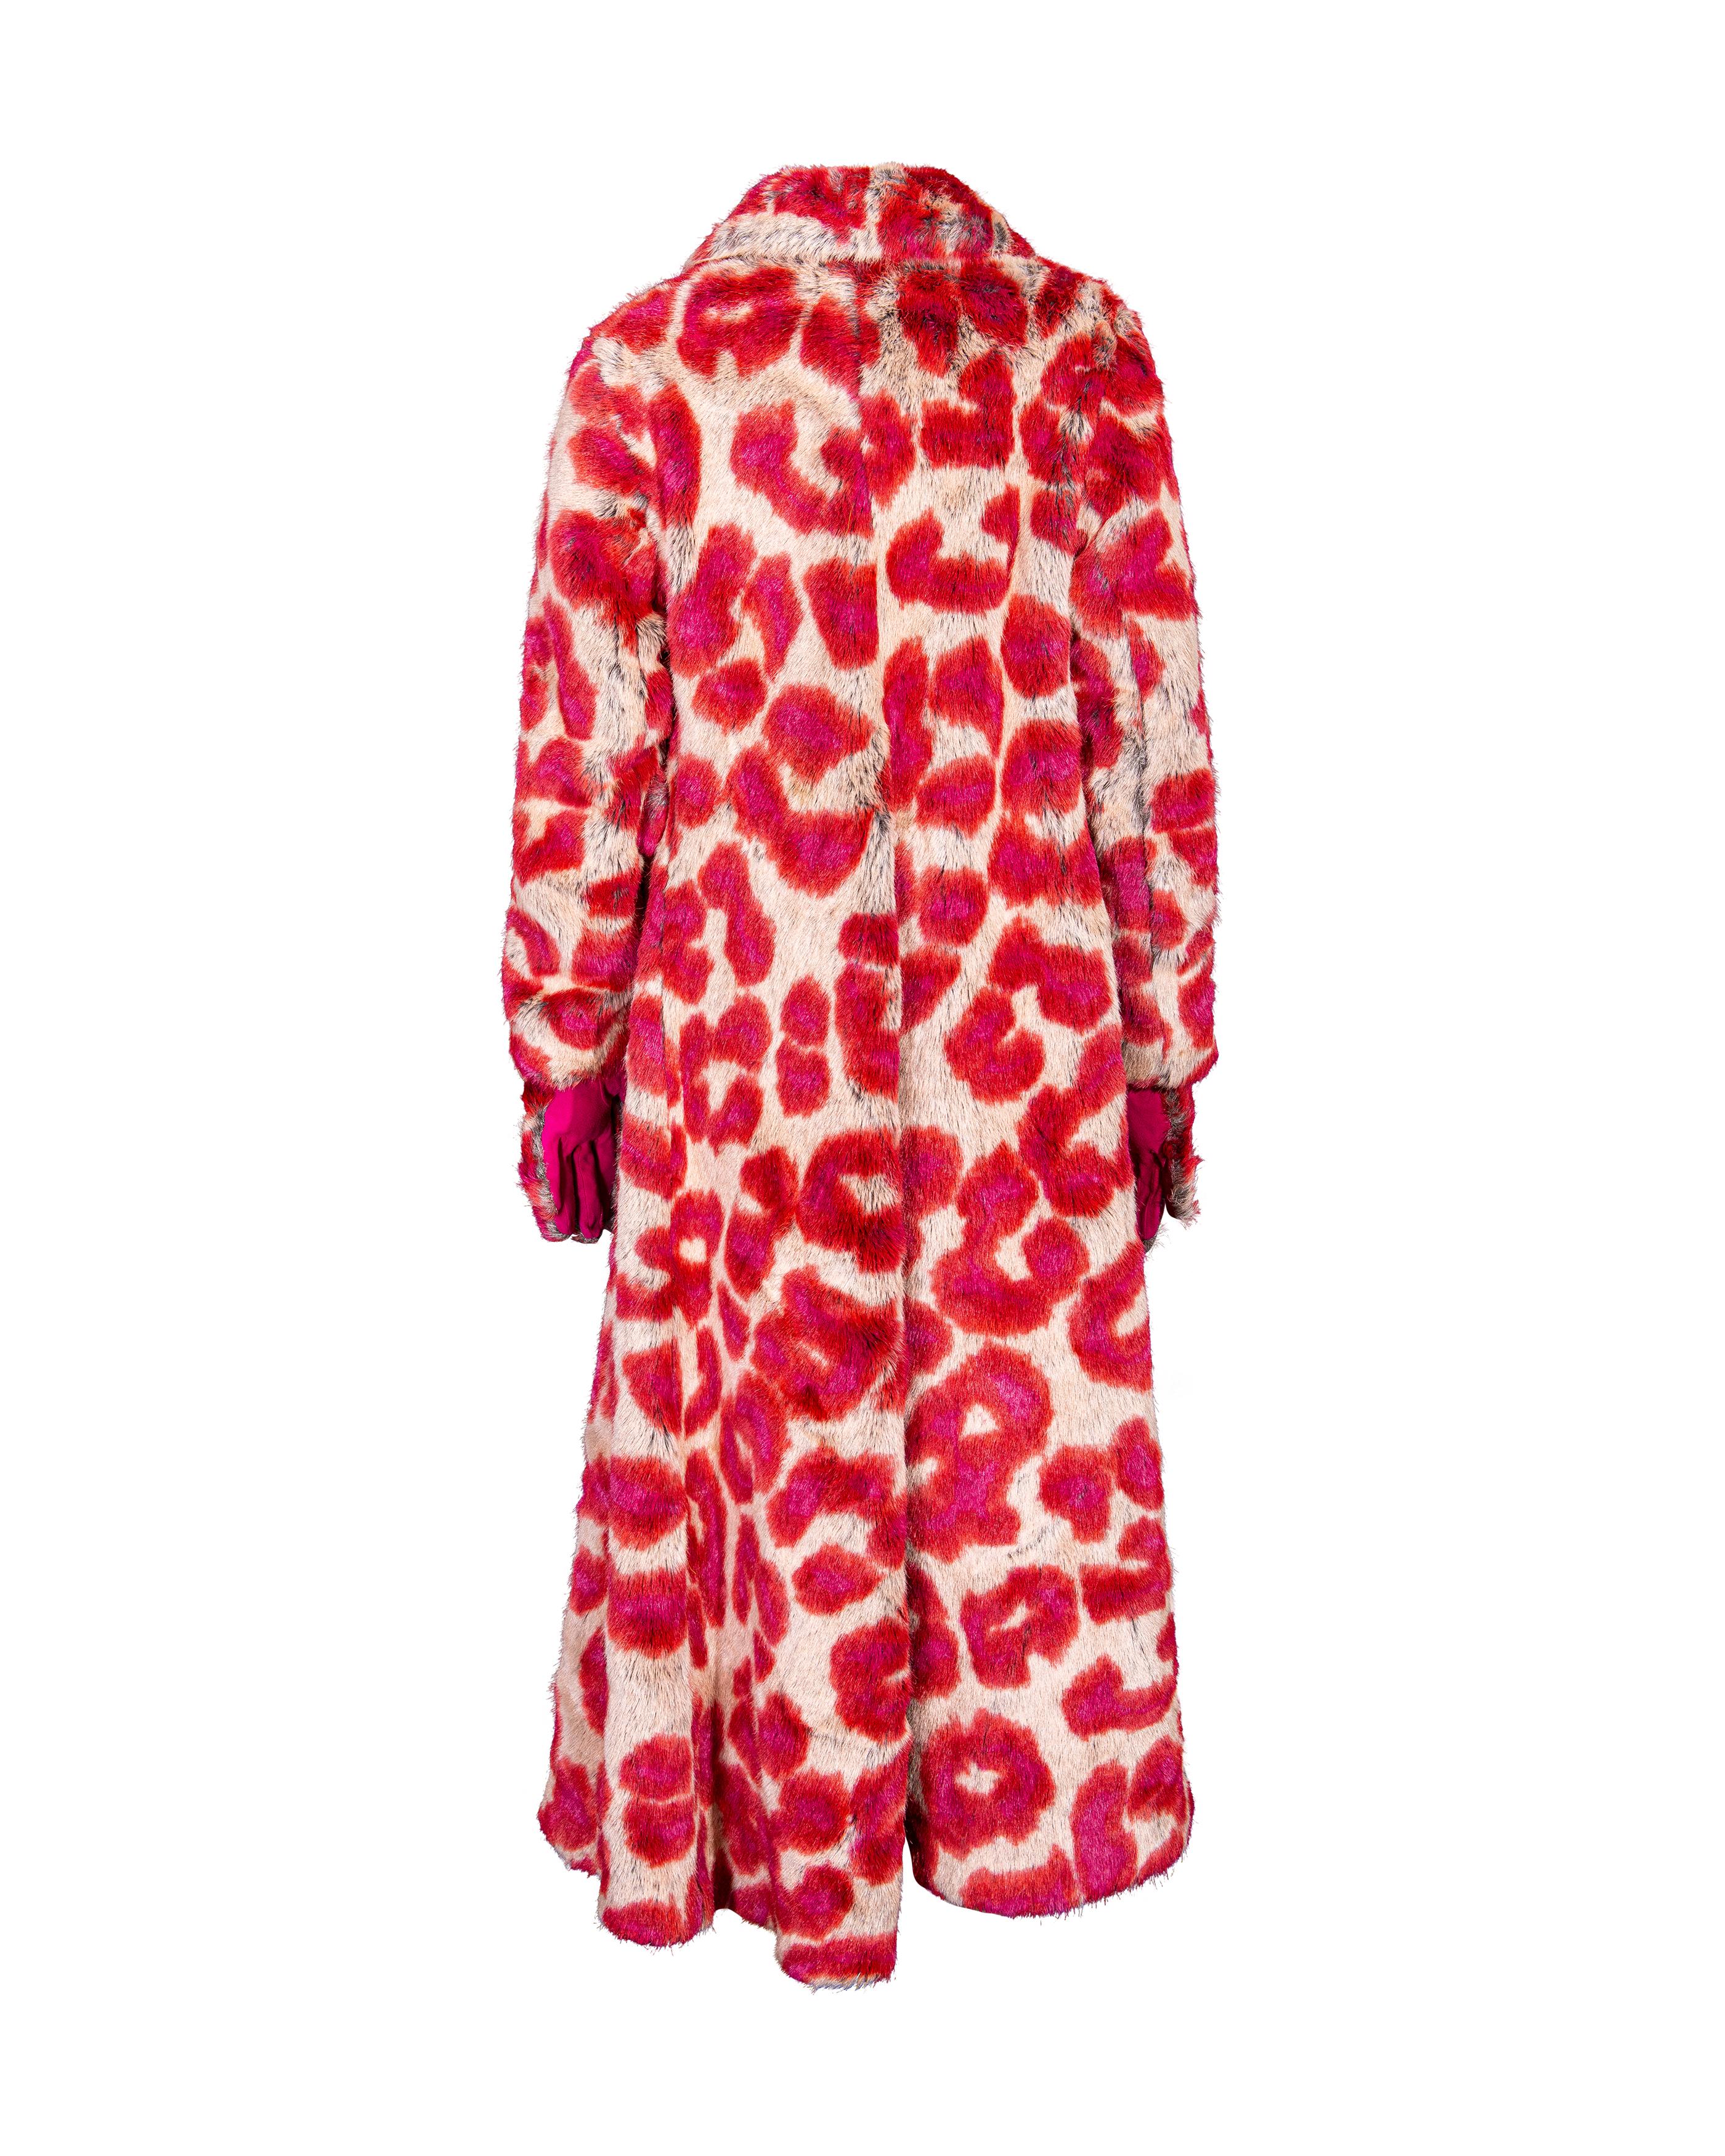 A/W 1992 Vivienne Westwood Faux Fur Leopard Print Coat and Glove Set For Sale 8